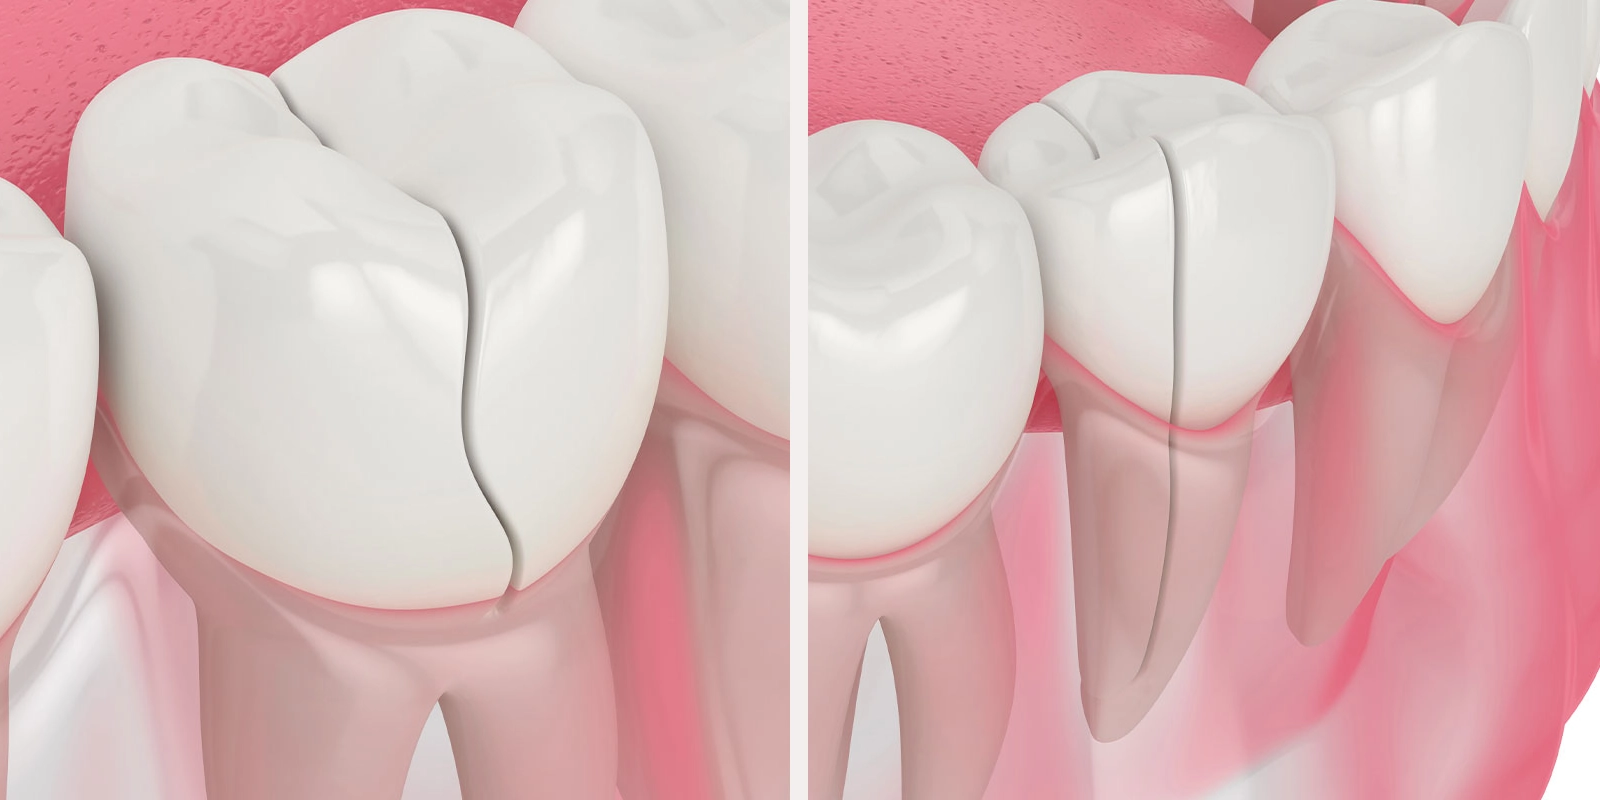 接着治療が可能な歯と不可能な歯